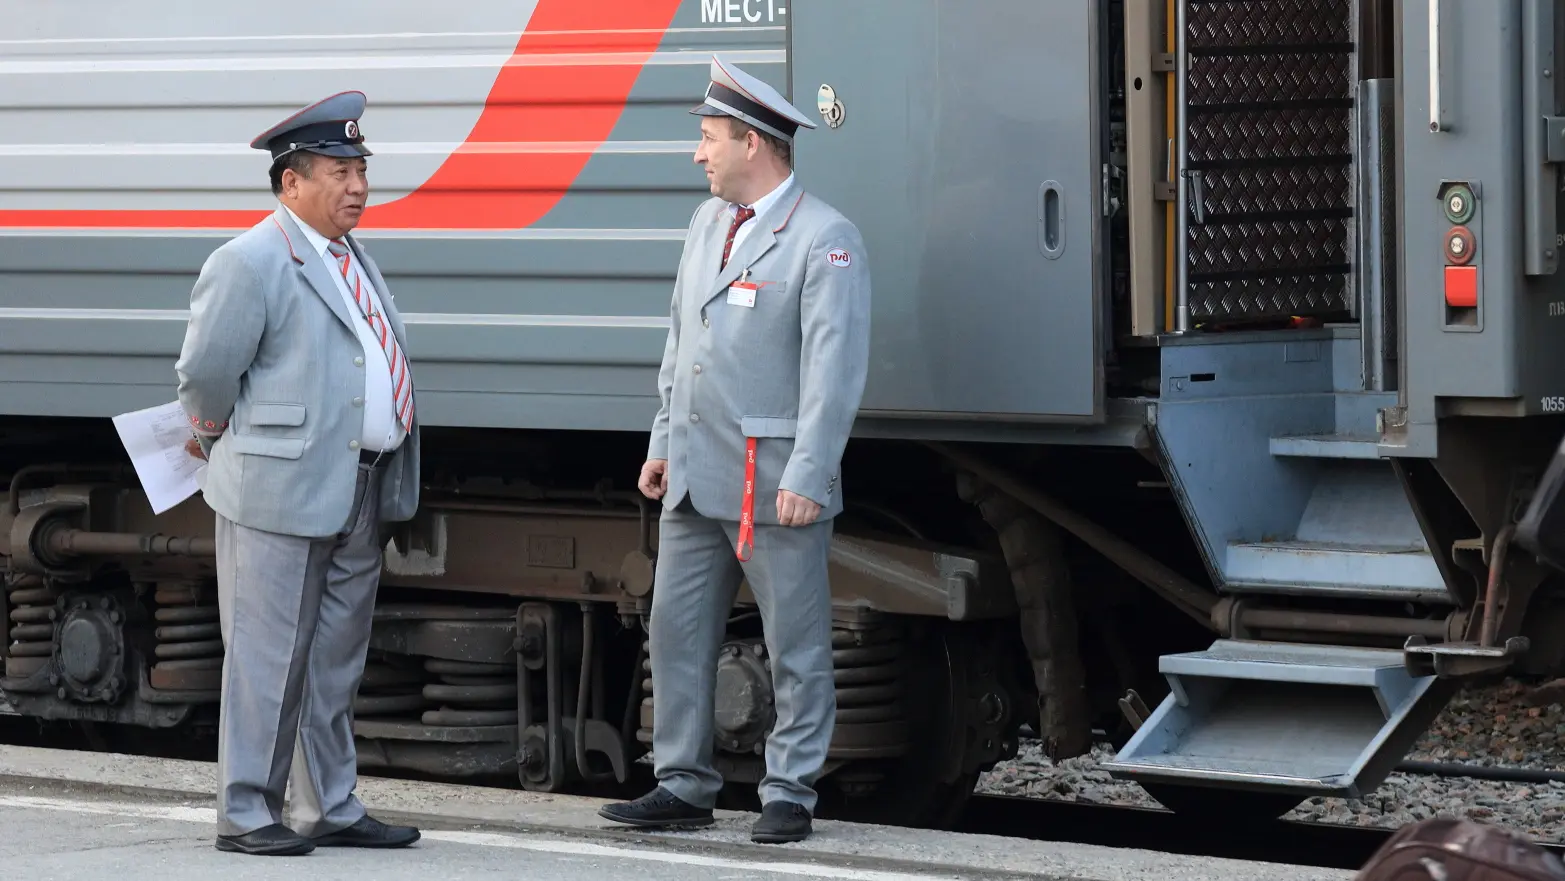 dva železničáři v úhledných uniformách postávají před otevřenými dveřmi vagonu